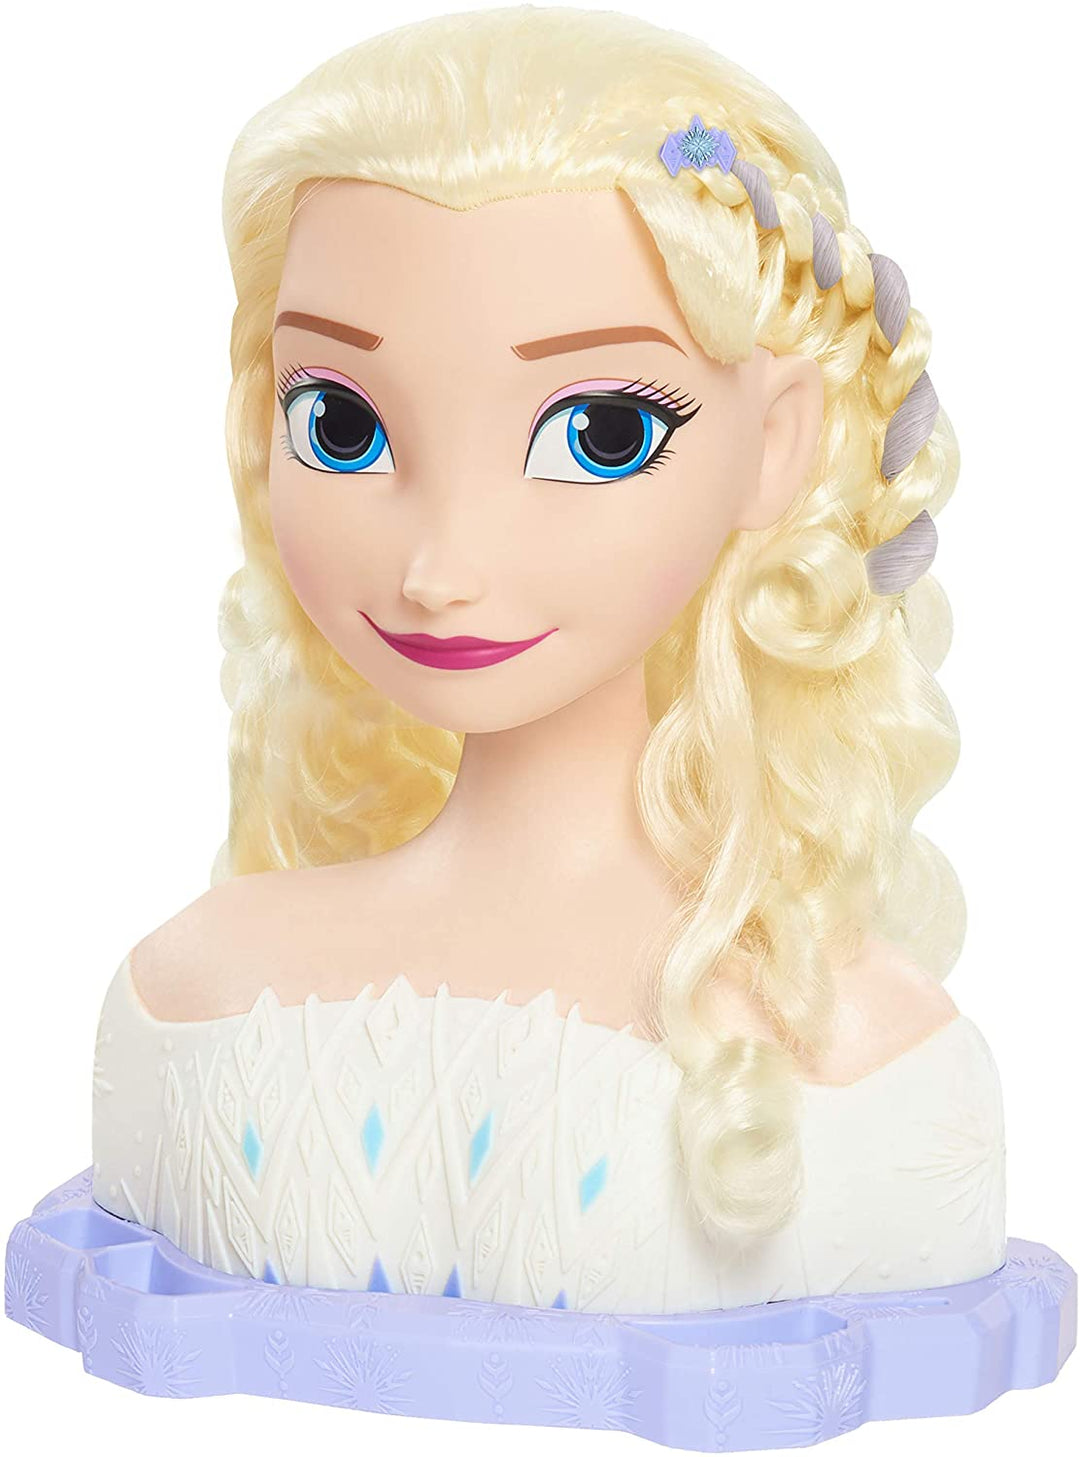 JP Disney Styling FRND6000 Frozen 2 Deluxe Elsa Styling Kopf